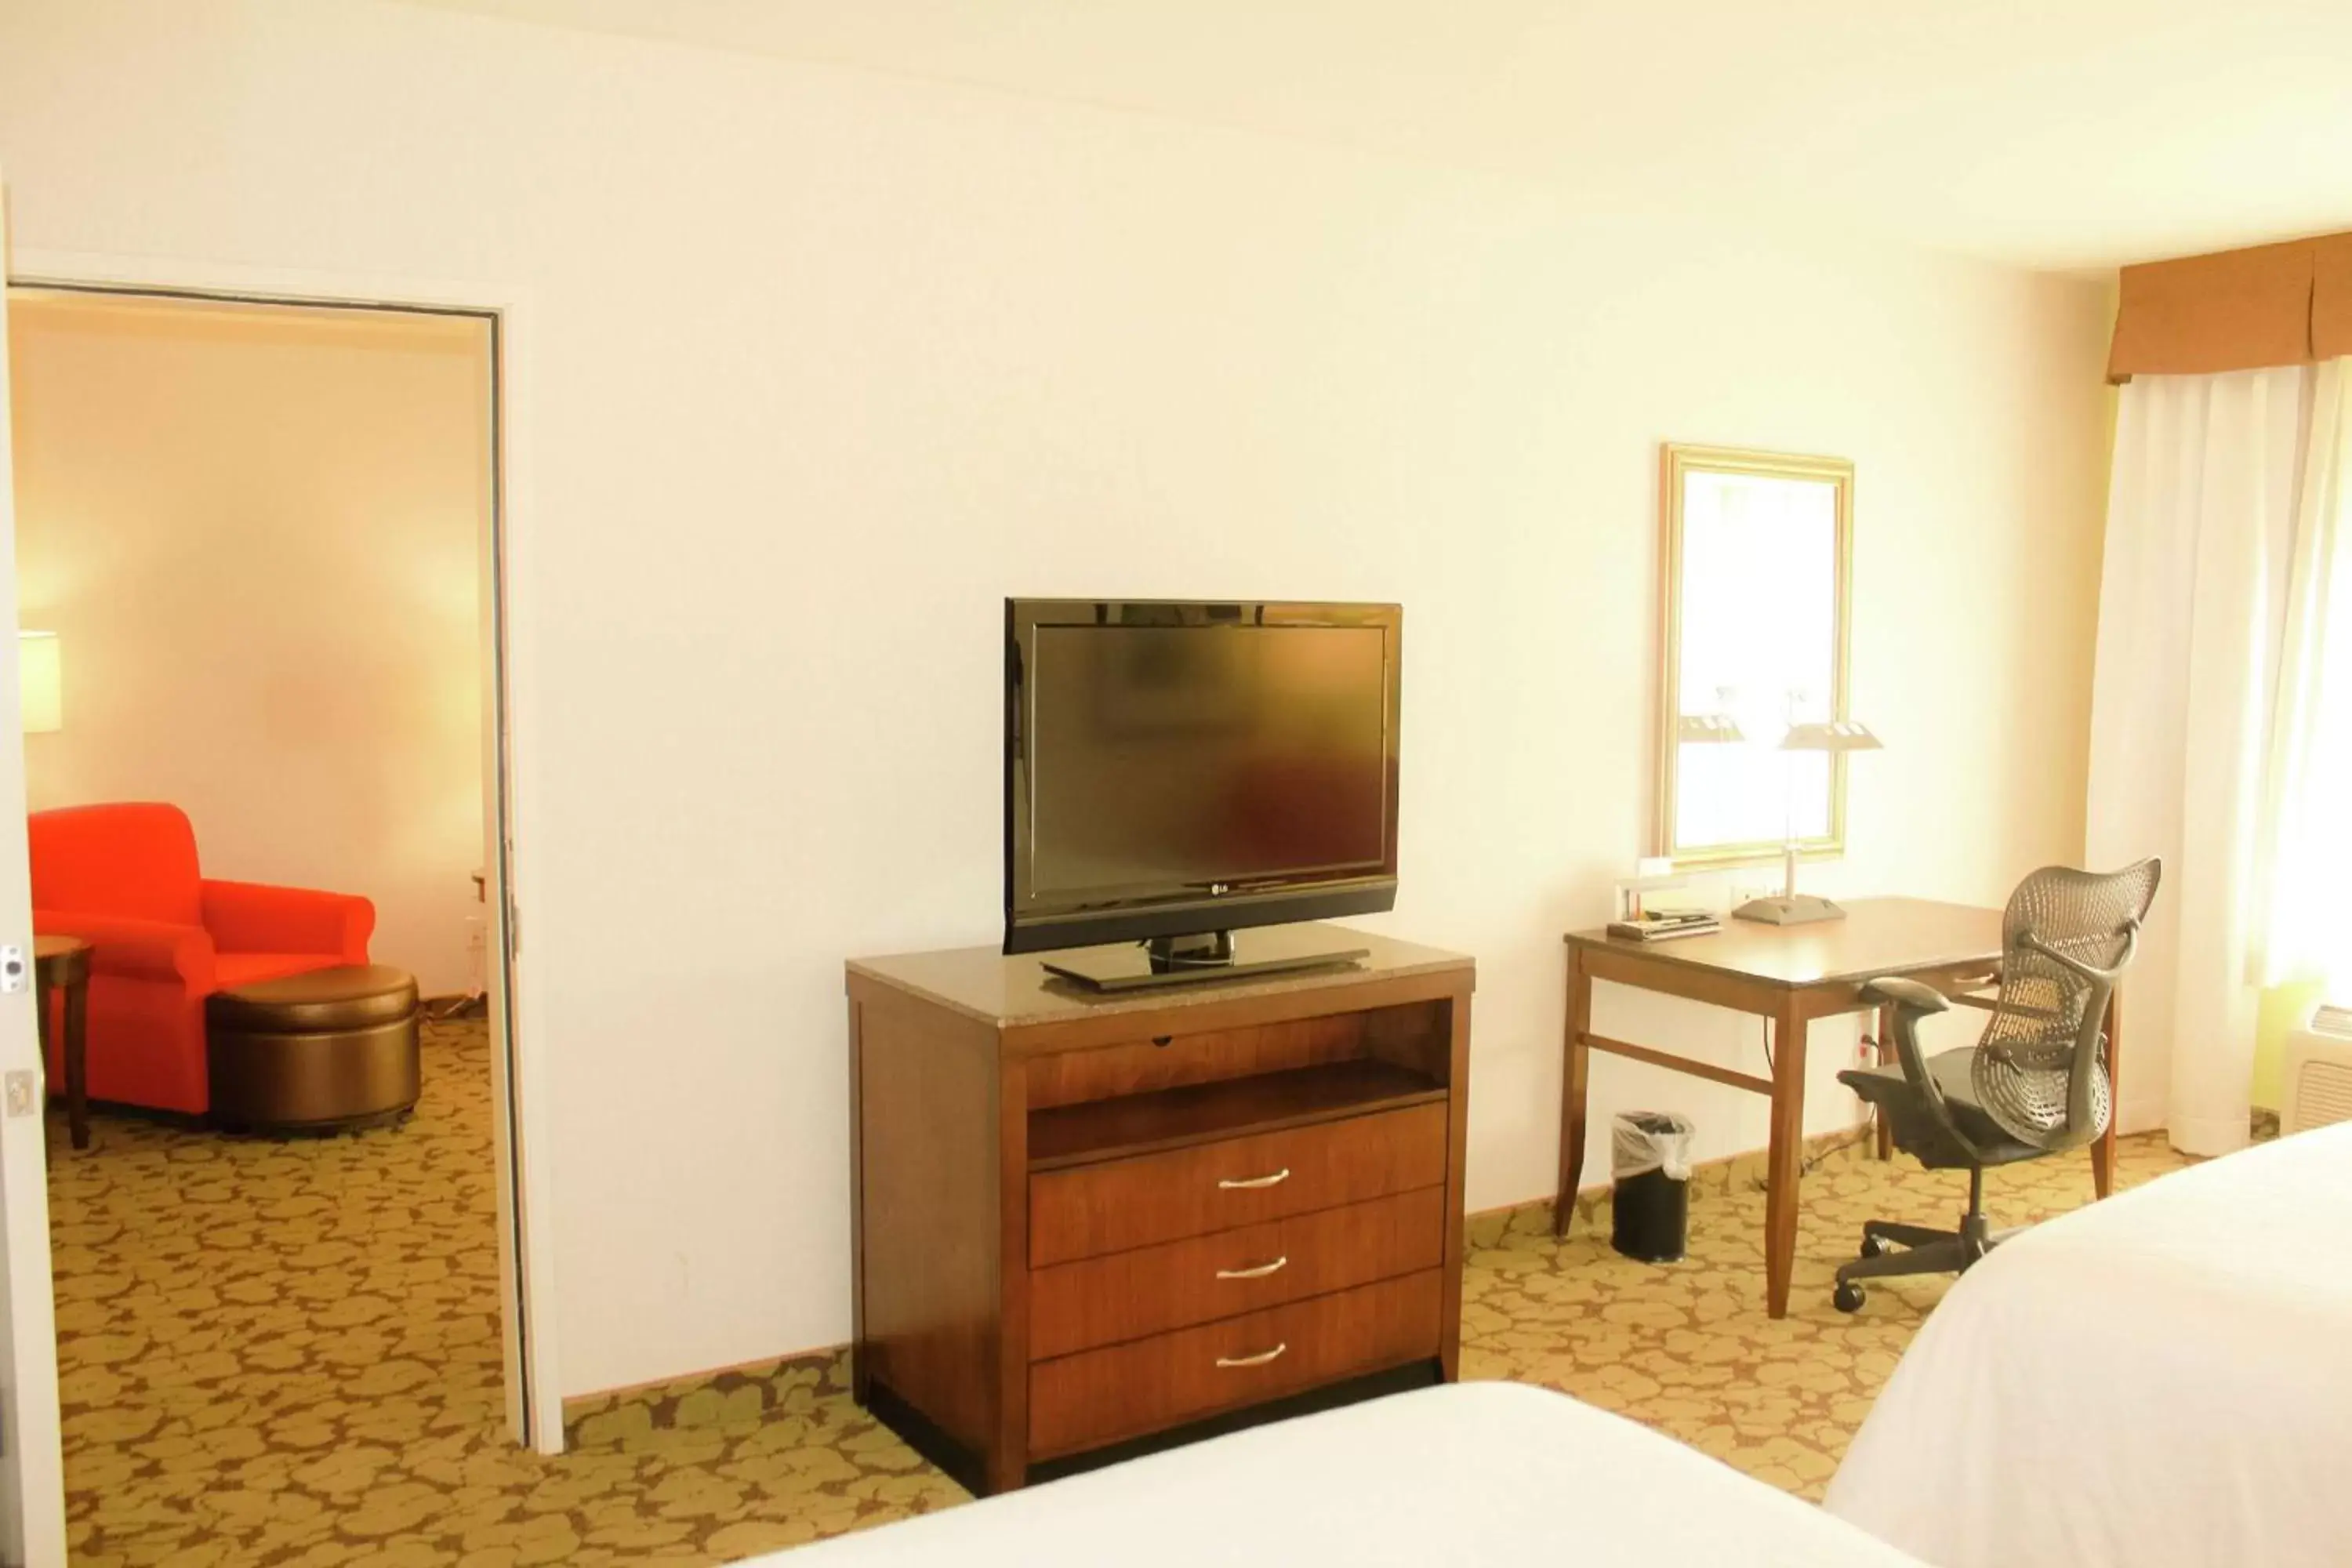 Bedroom, TV/Entertainment Center in Hilton Garden Inn Redding